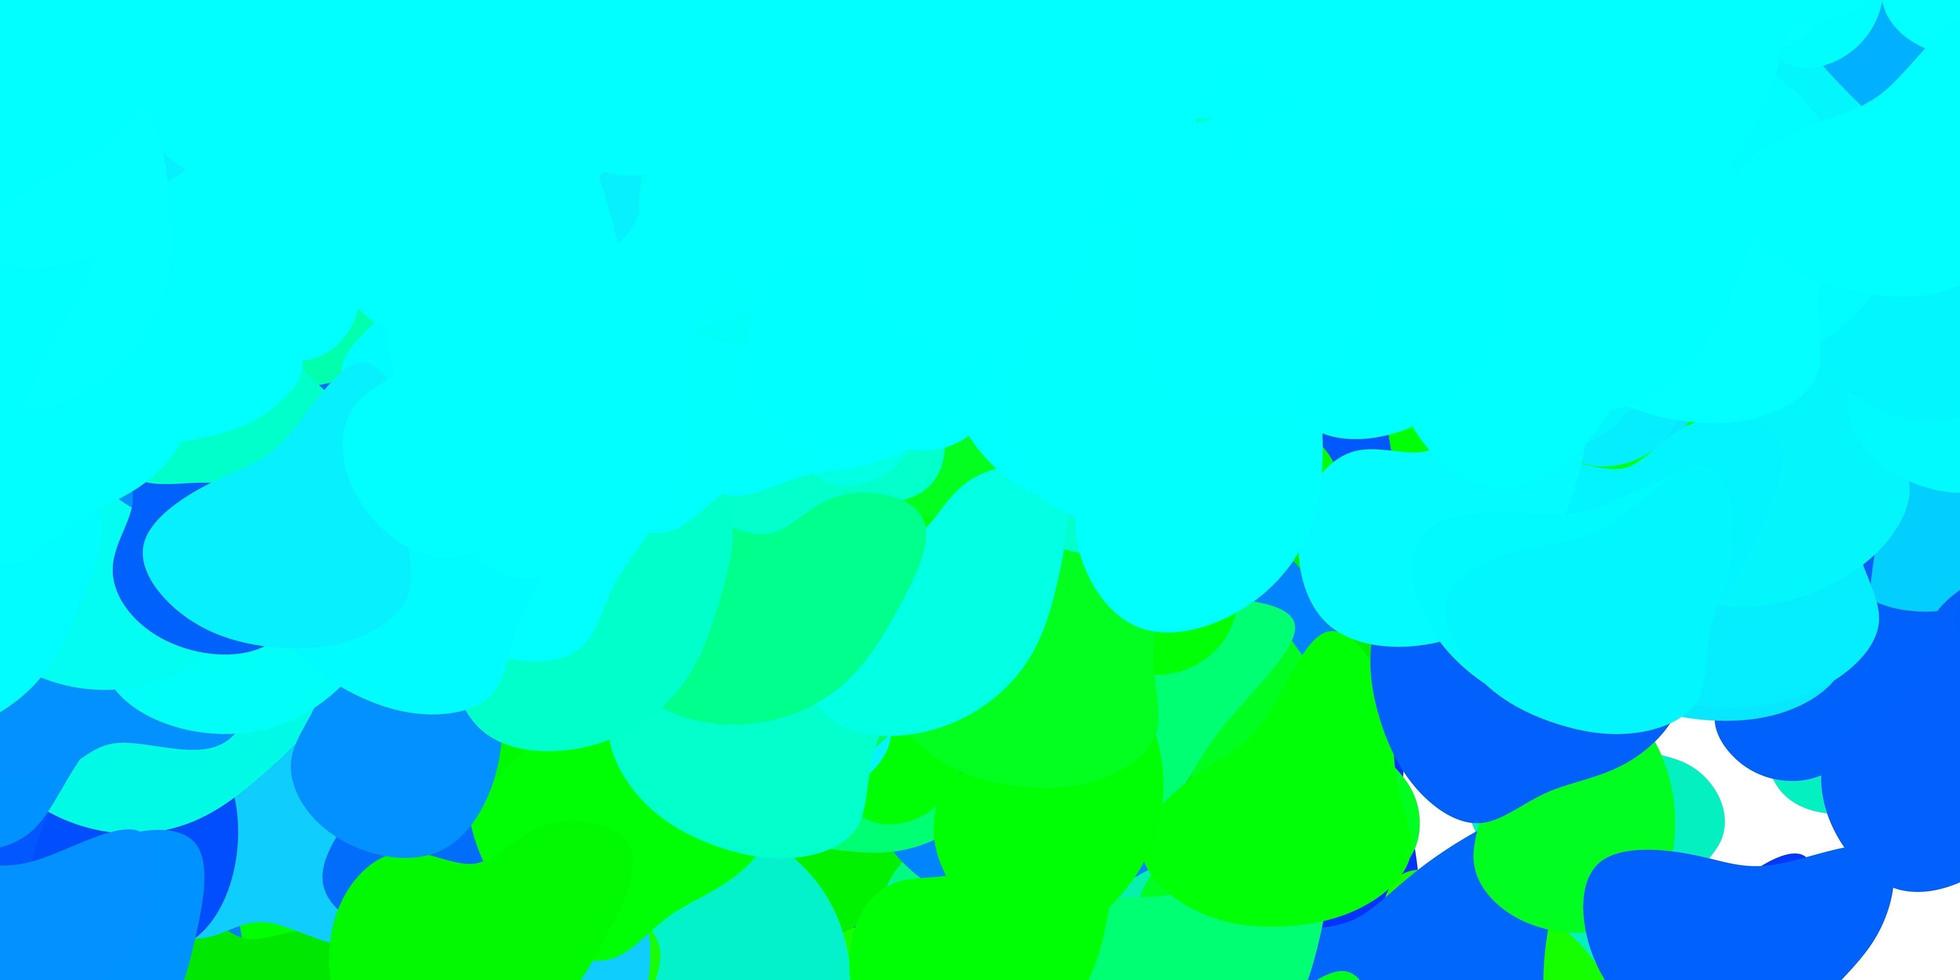 padrão de vetor azul claro, verde com formas abstratas.